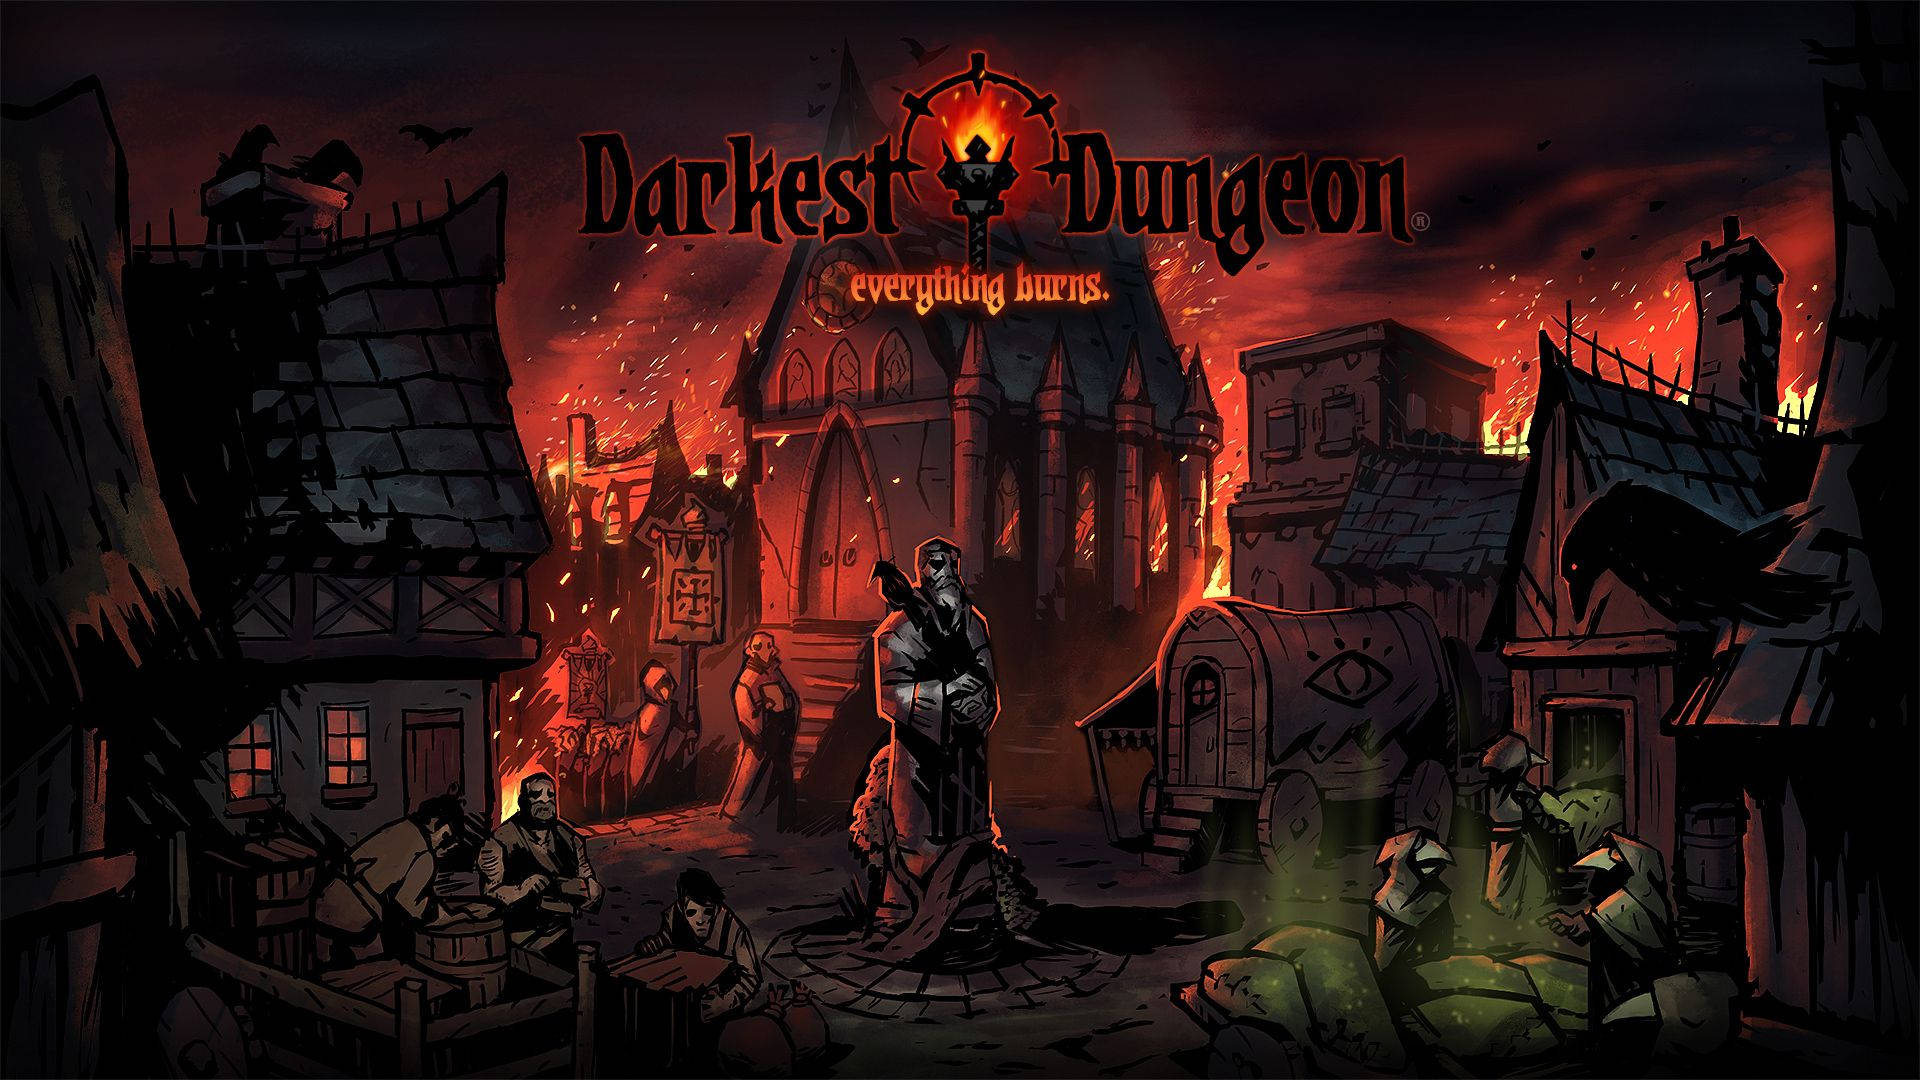 Everything Burns Darkest Dungeon Background